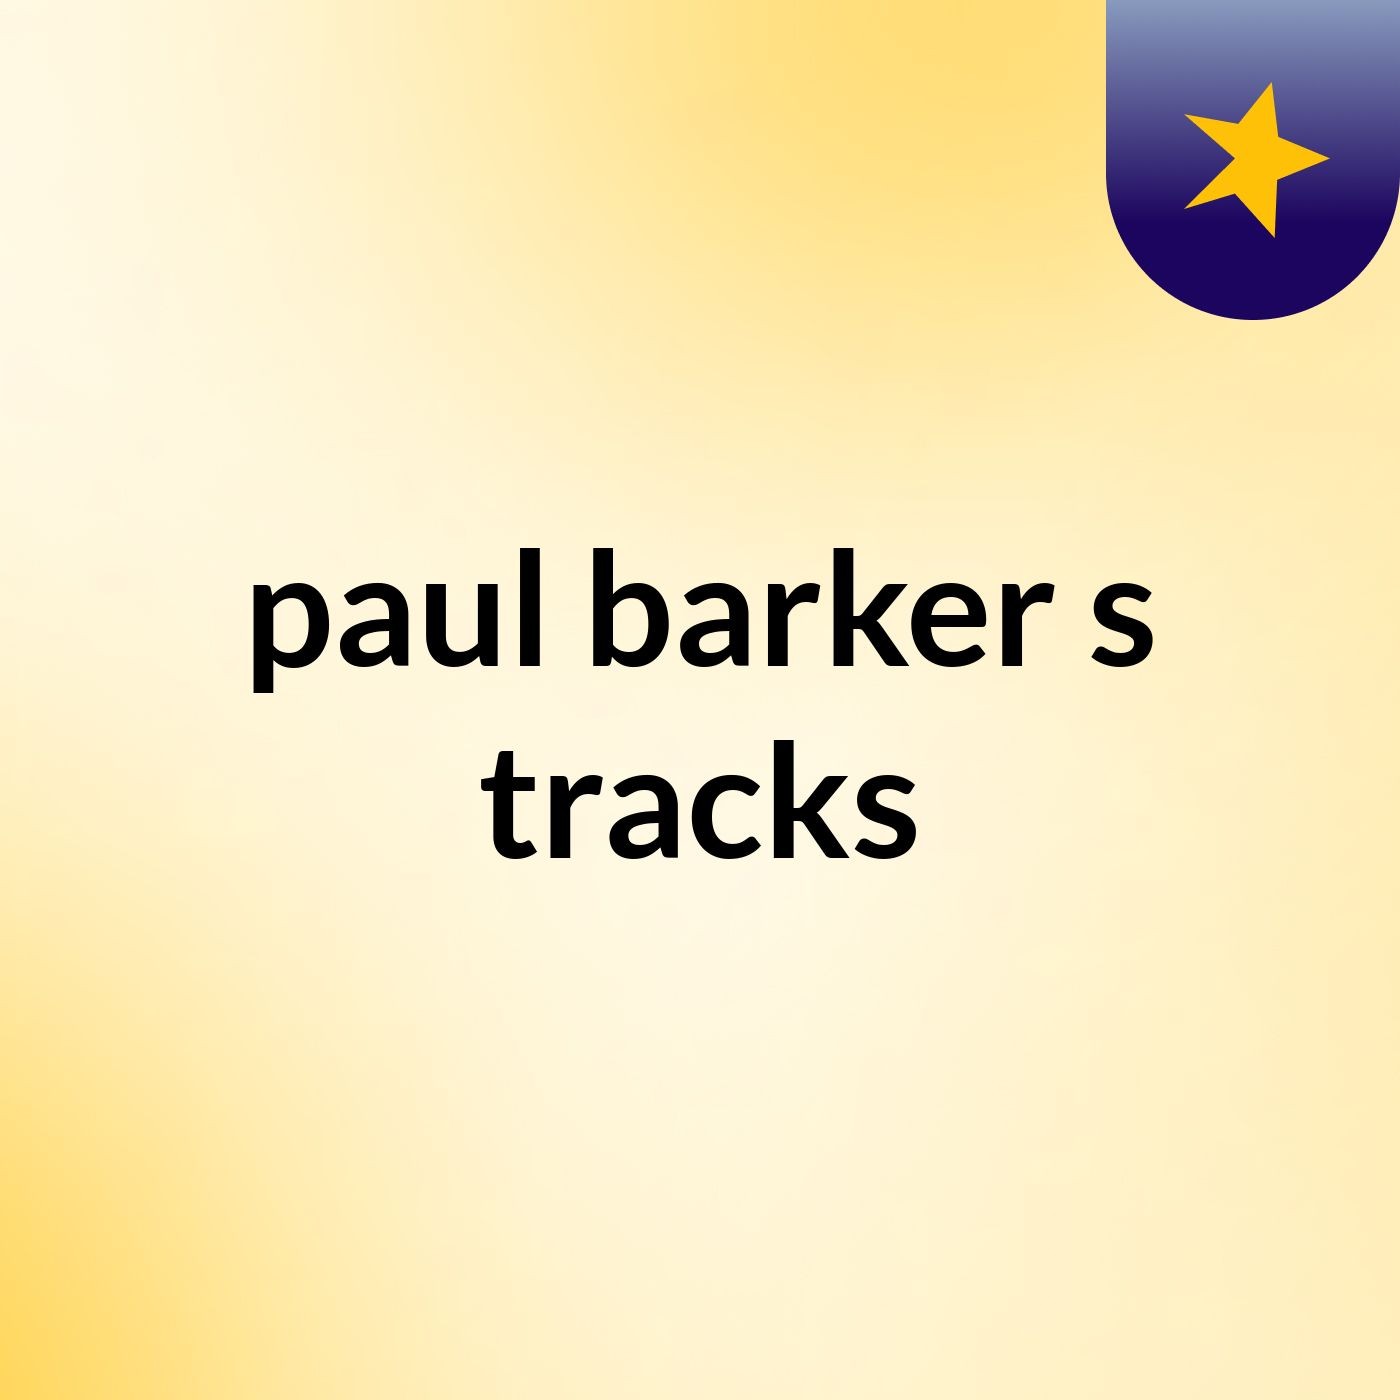 paul barker's tracks